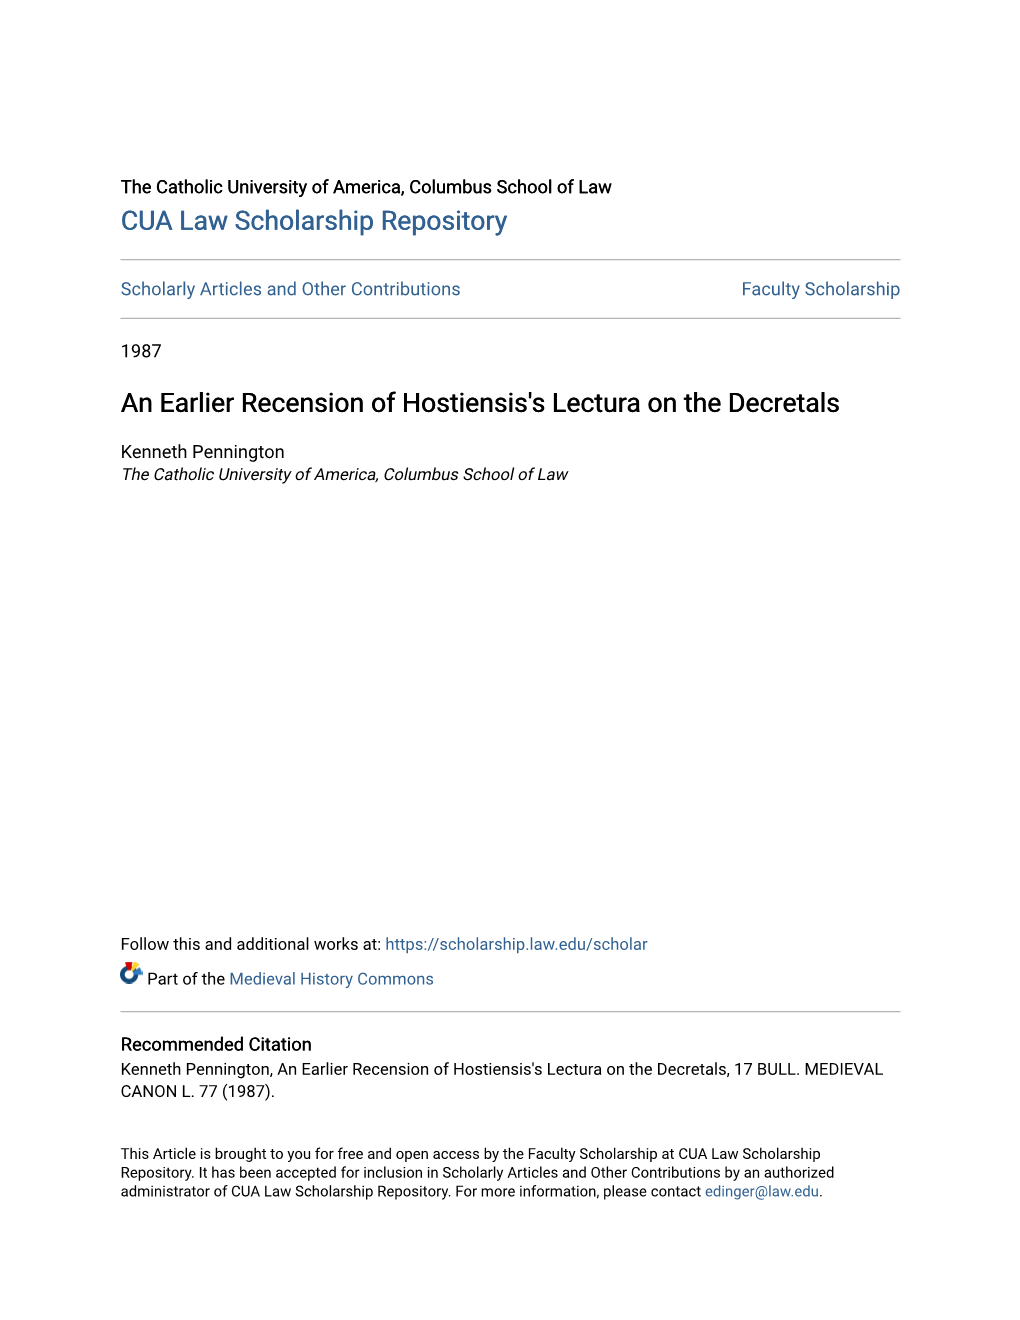 An Earlier Recension of Hostiensis's Lectura on the Decretals